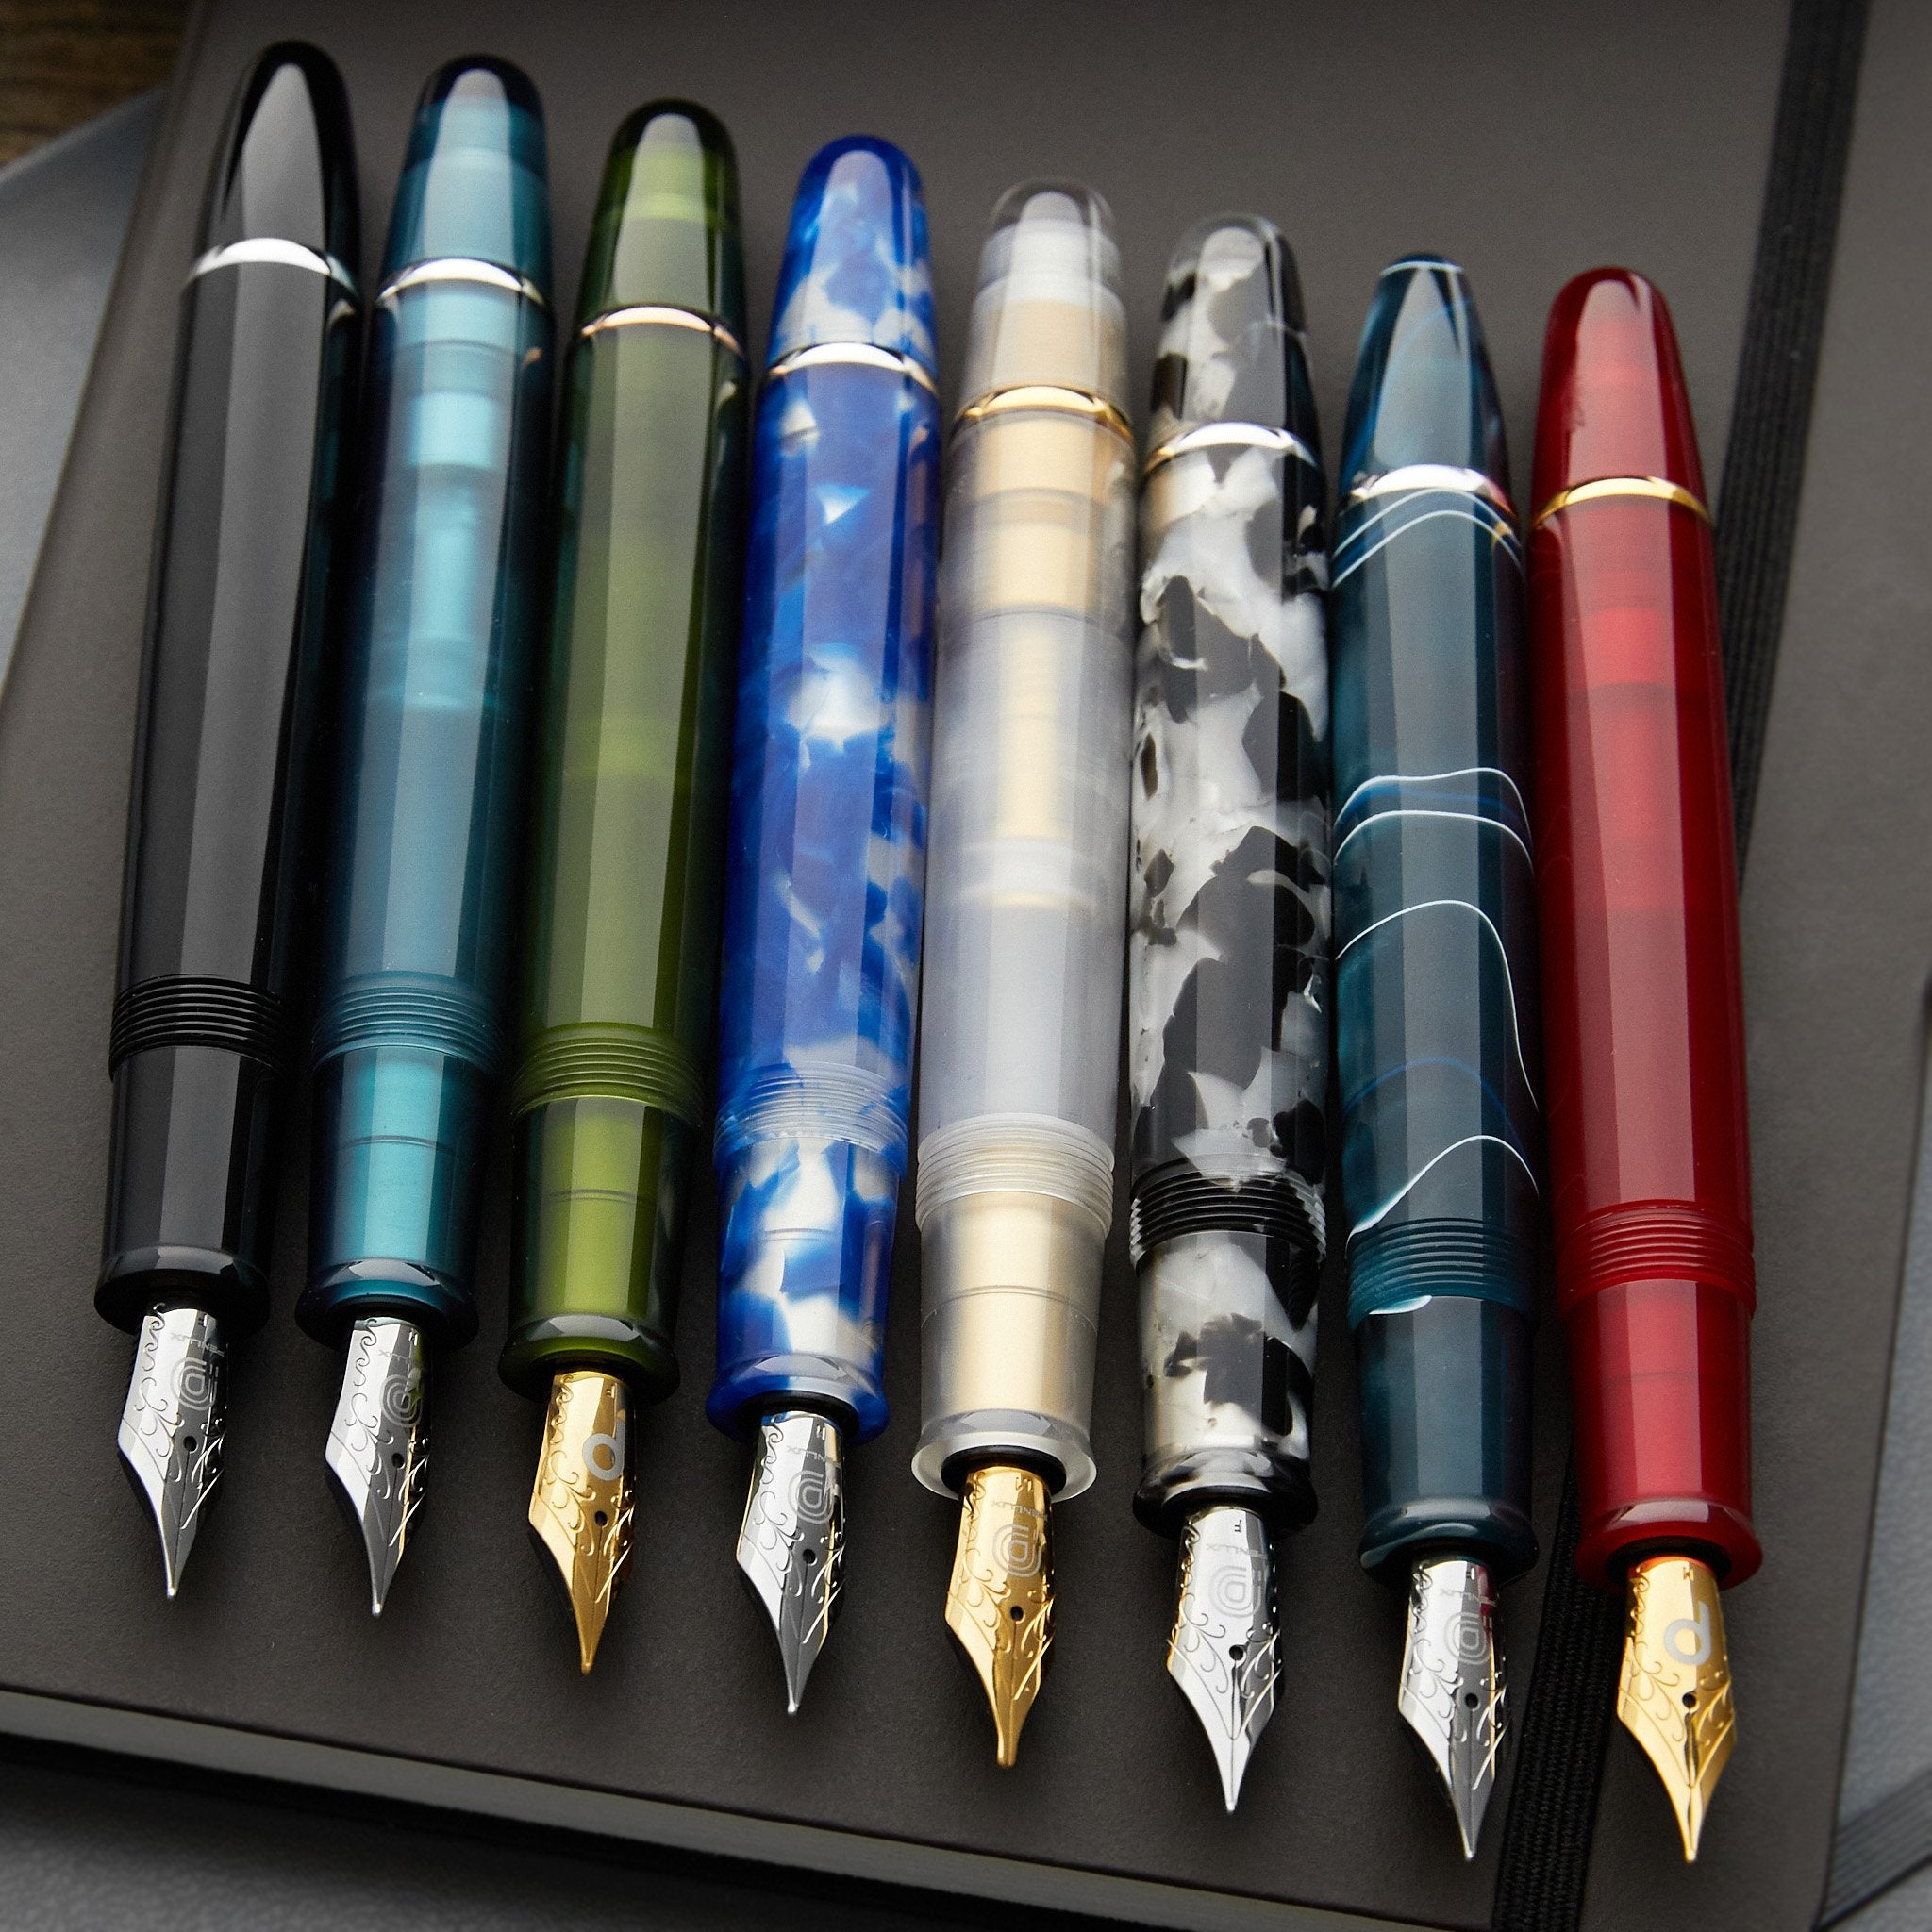 Penlux Fountain Pens - The Goulet Pen Company